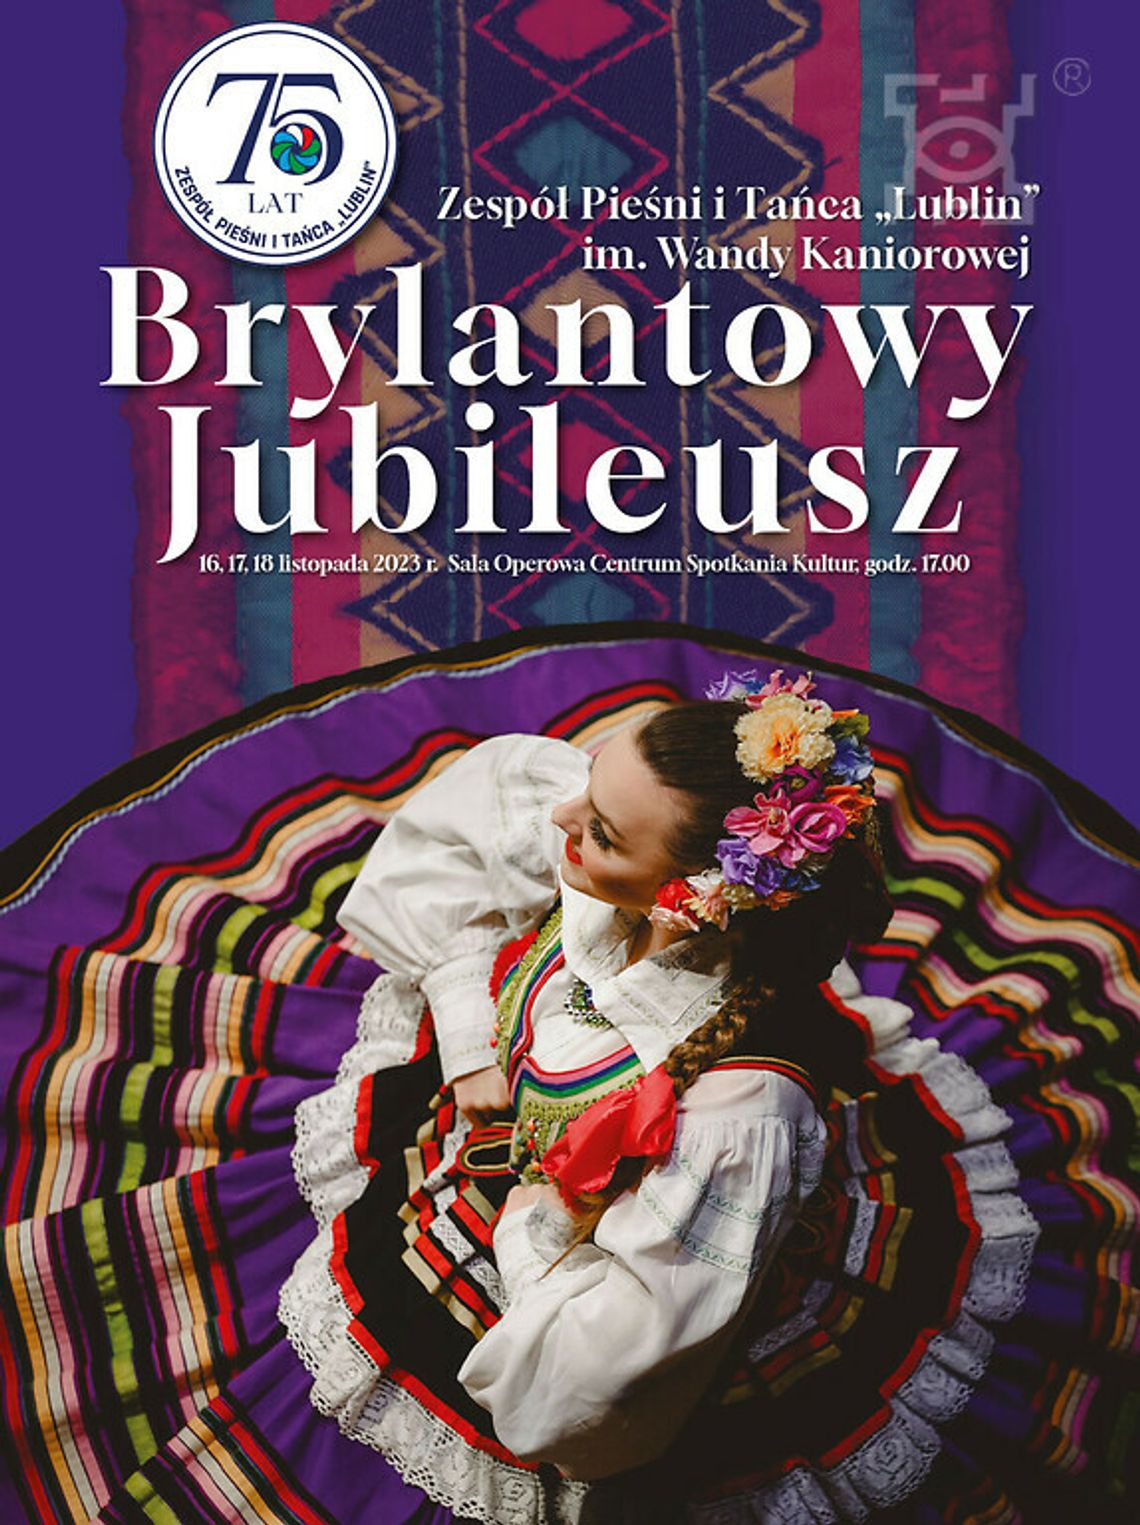 Brylantowy Jubileusz 75-lecia Zespołu Pieśni i Tańca "Lublin" im. Wandy Kaniorowej